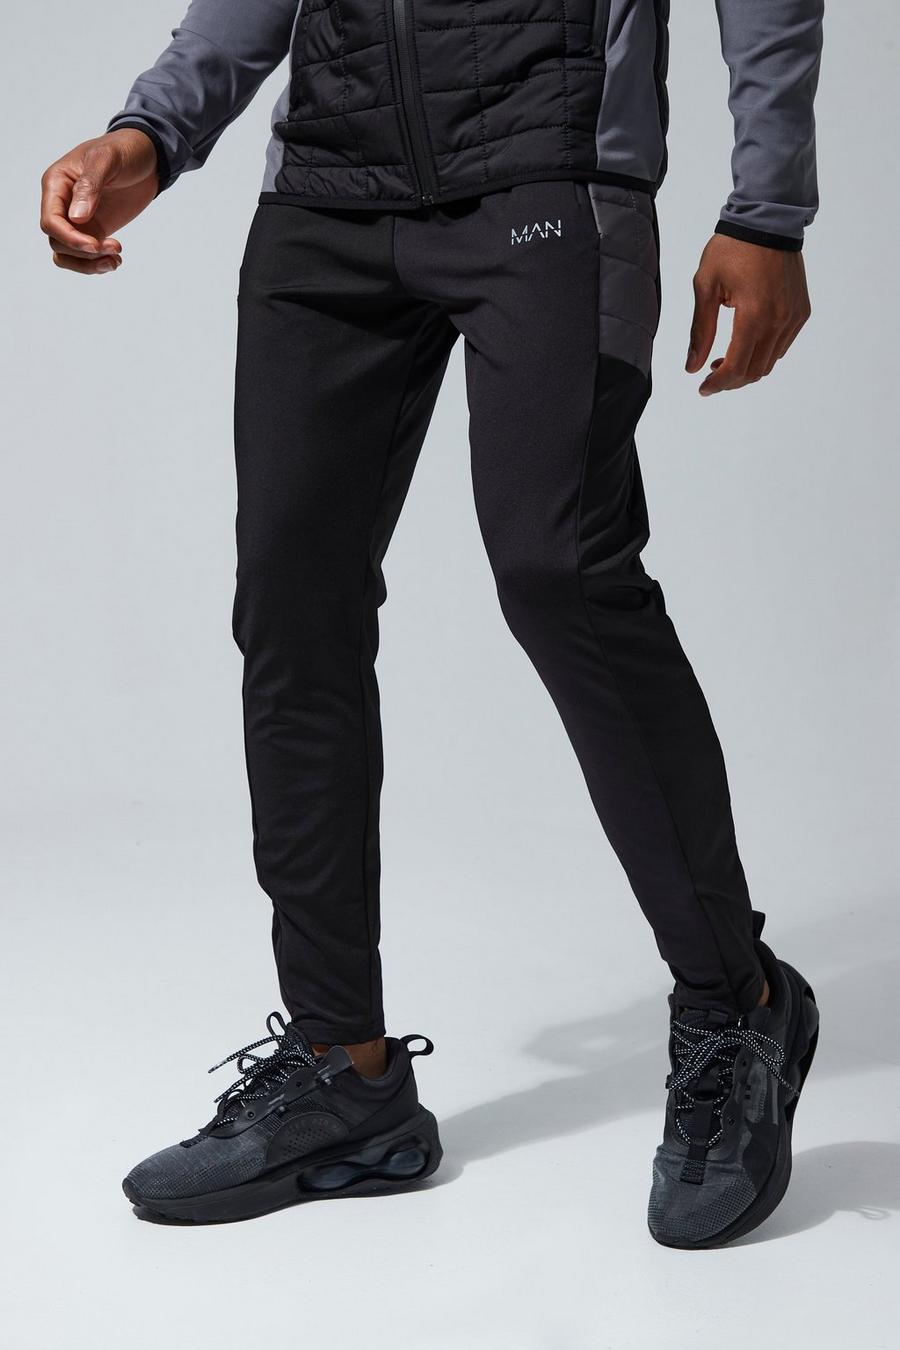 Pantaloni tuta Skinny Fit Man Active Hybrid trapuntati, Black negro